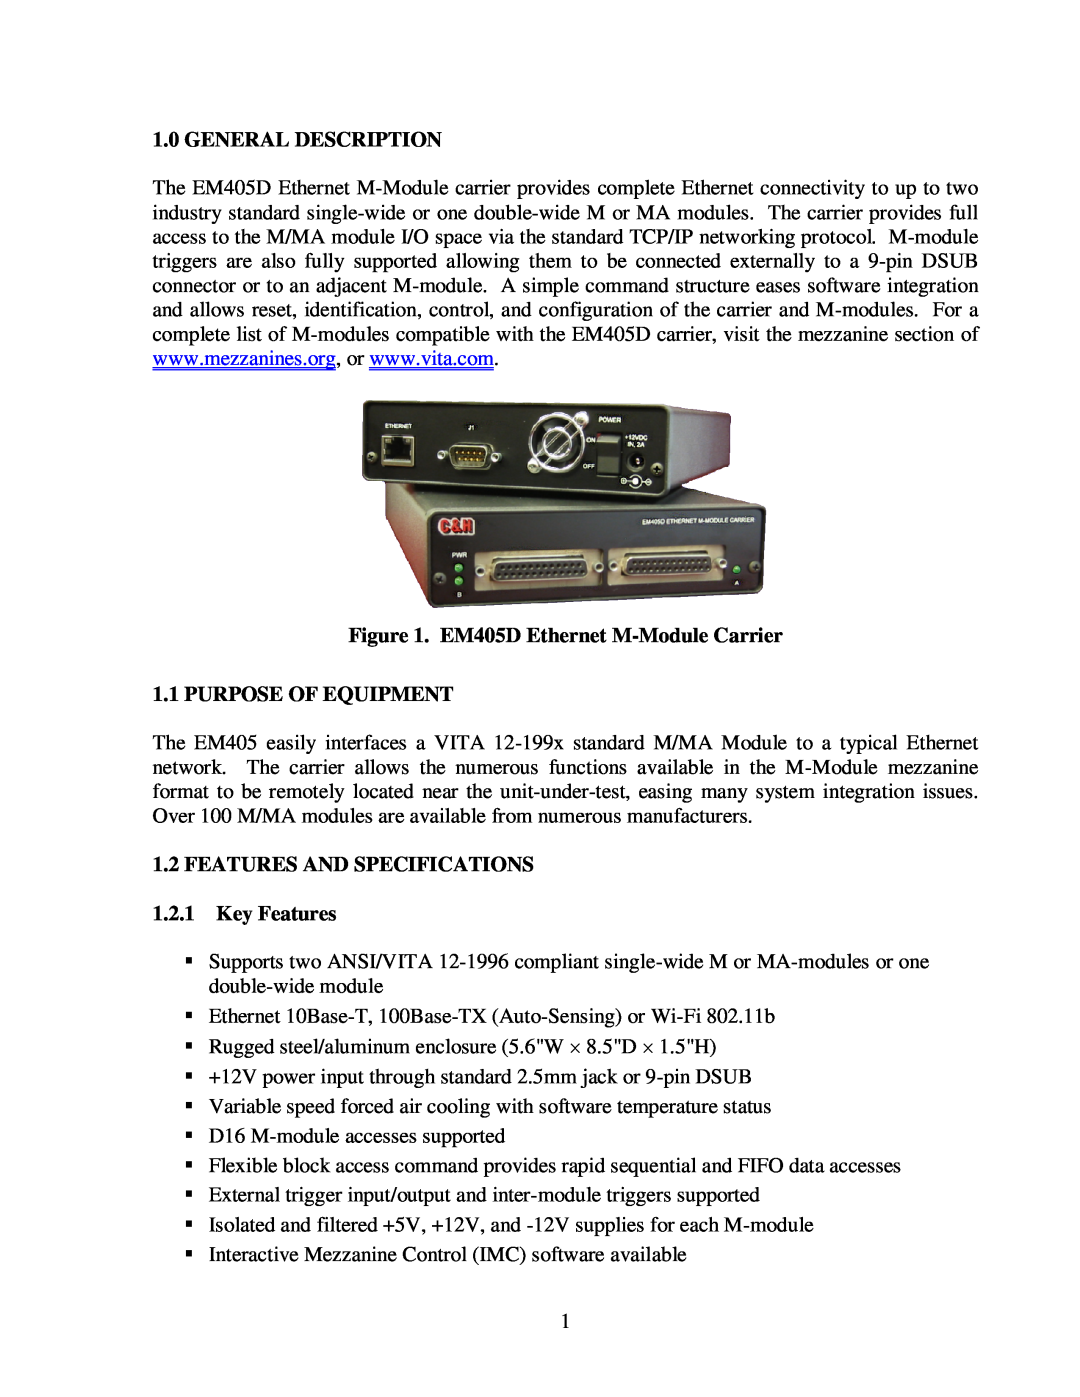 CH Tech user manual General Description, EM405D Ethernet M-Module Carrier 1.1 PURPOSE OF EQUIPMENT 